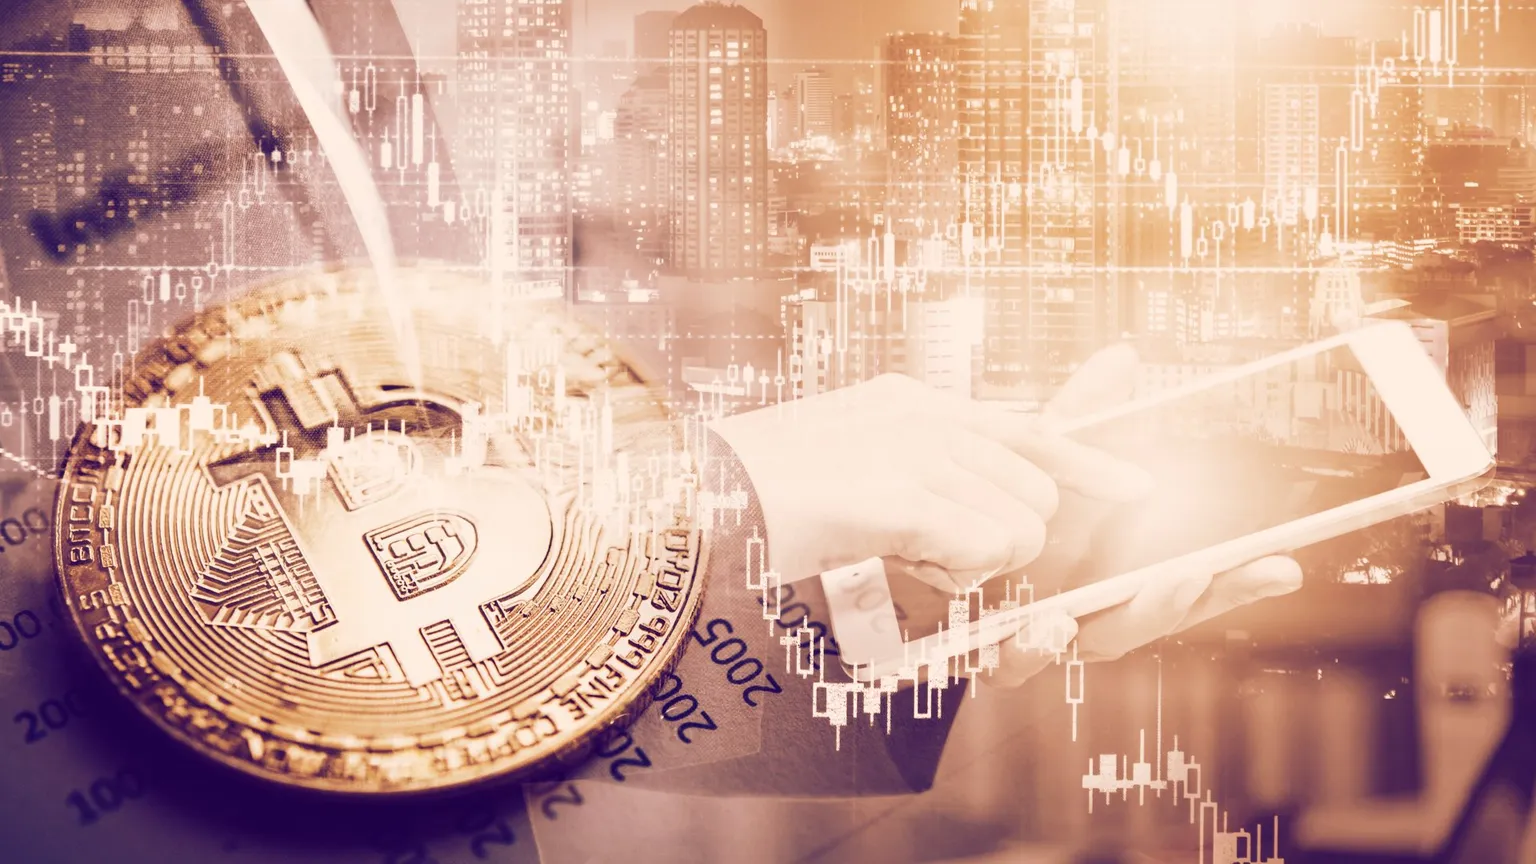 La participación institucional en los mercados de bitcoin se recupera en 2020. Image: Shutterstock